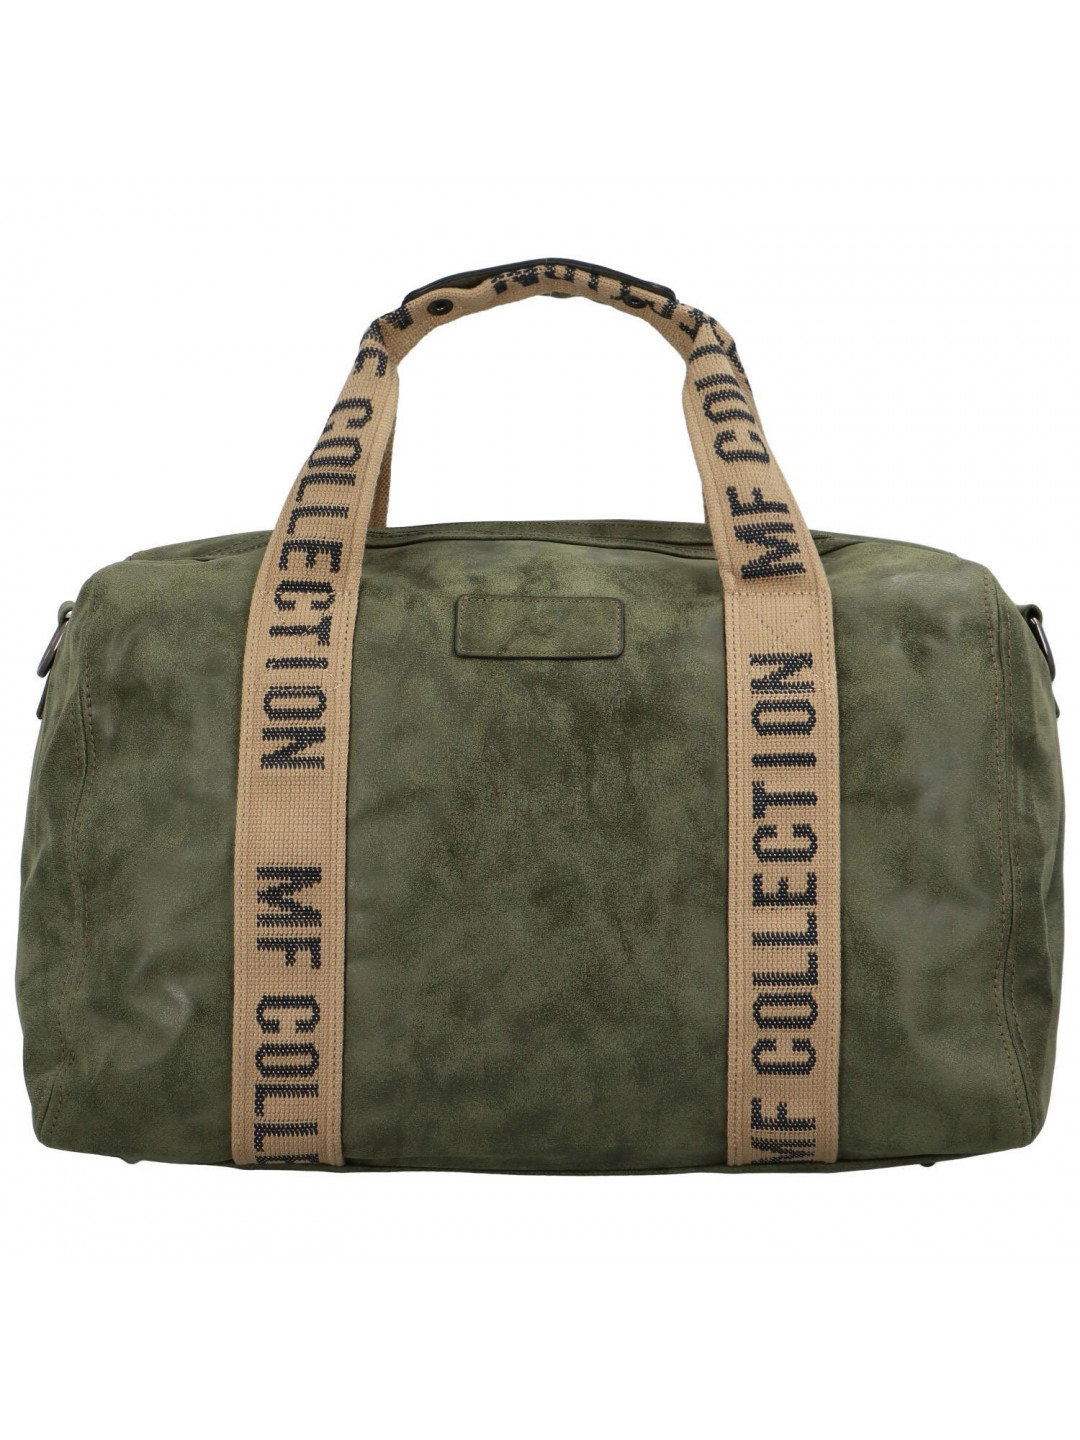 Cestovní dámská koženková kabelka Gita zimní kolekce tmavě zelená